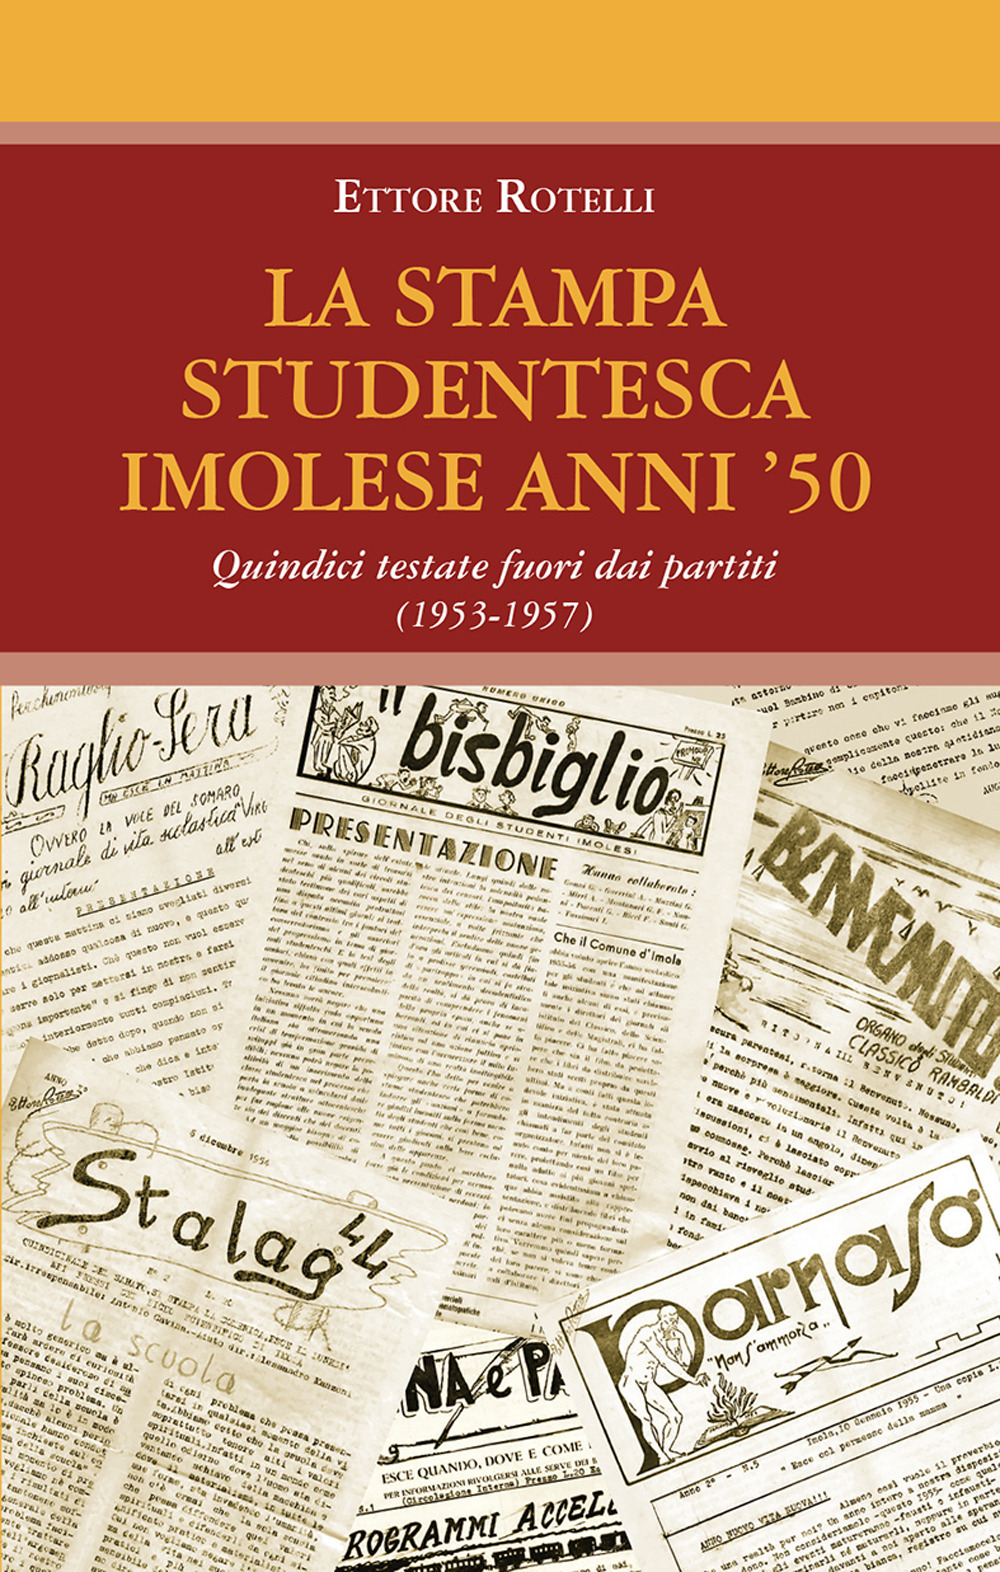 La stampa studentesca imolese anni '50. Quindici testate fuori dai partiti (1953-1957)